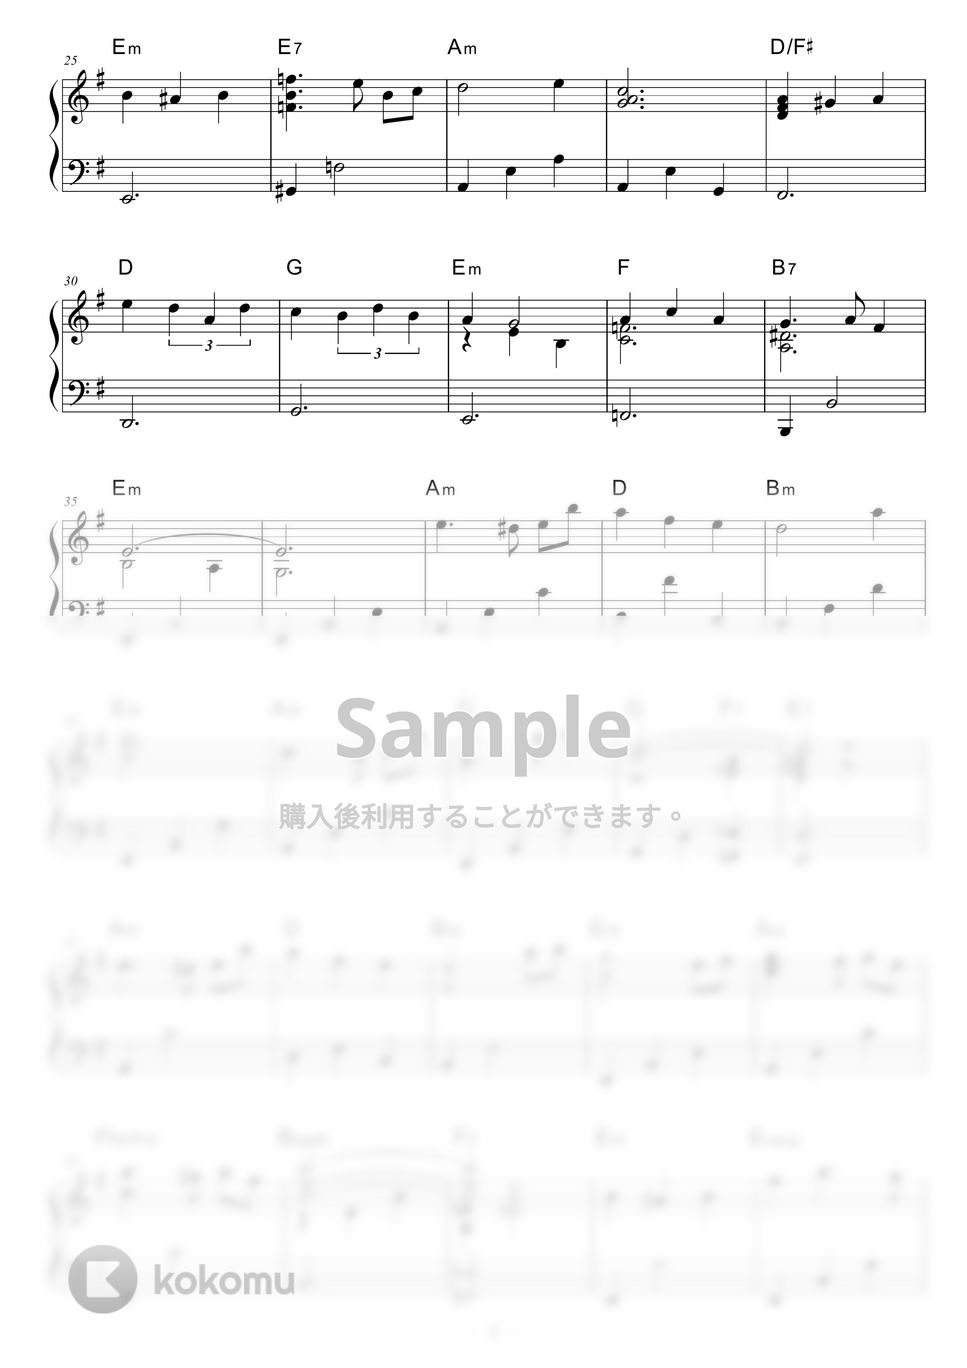 大野雄二 - 愛のバラード (犬神家の一族より) by piano*score